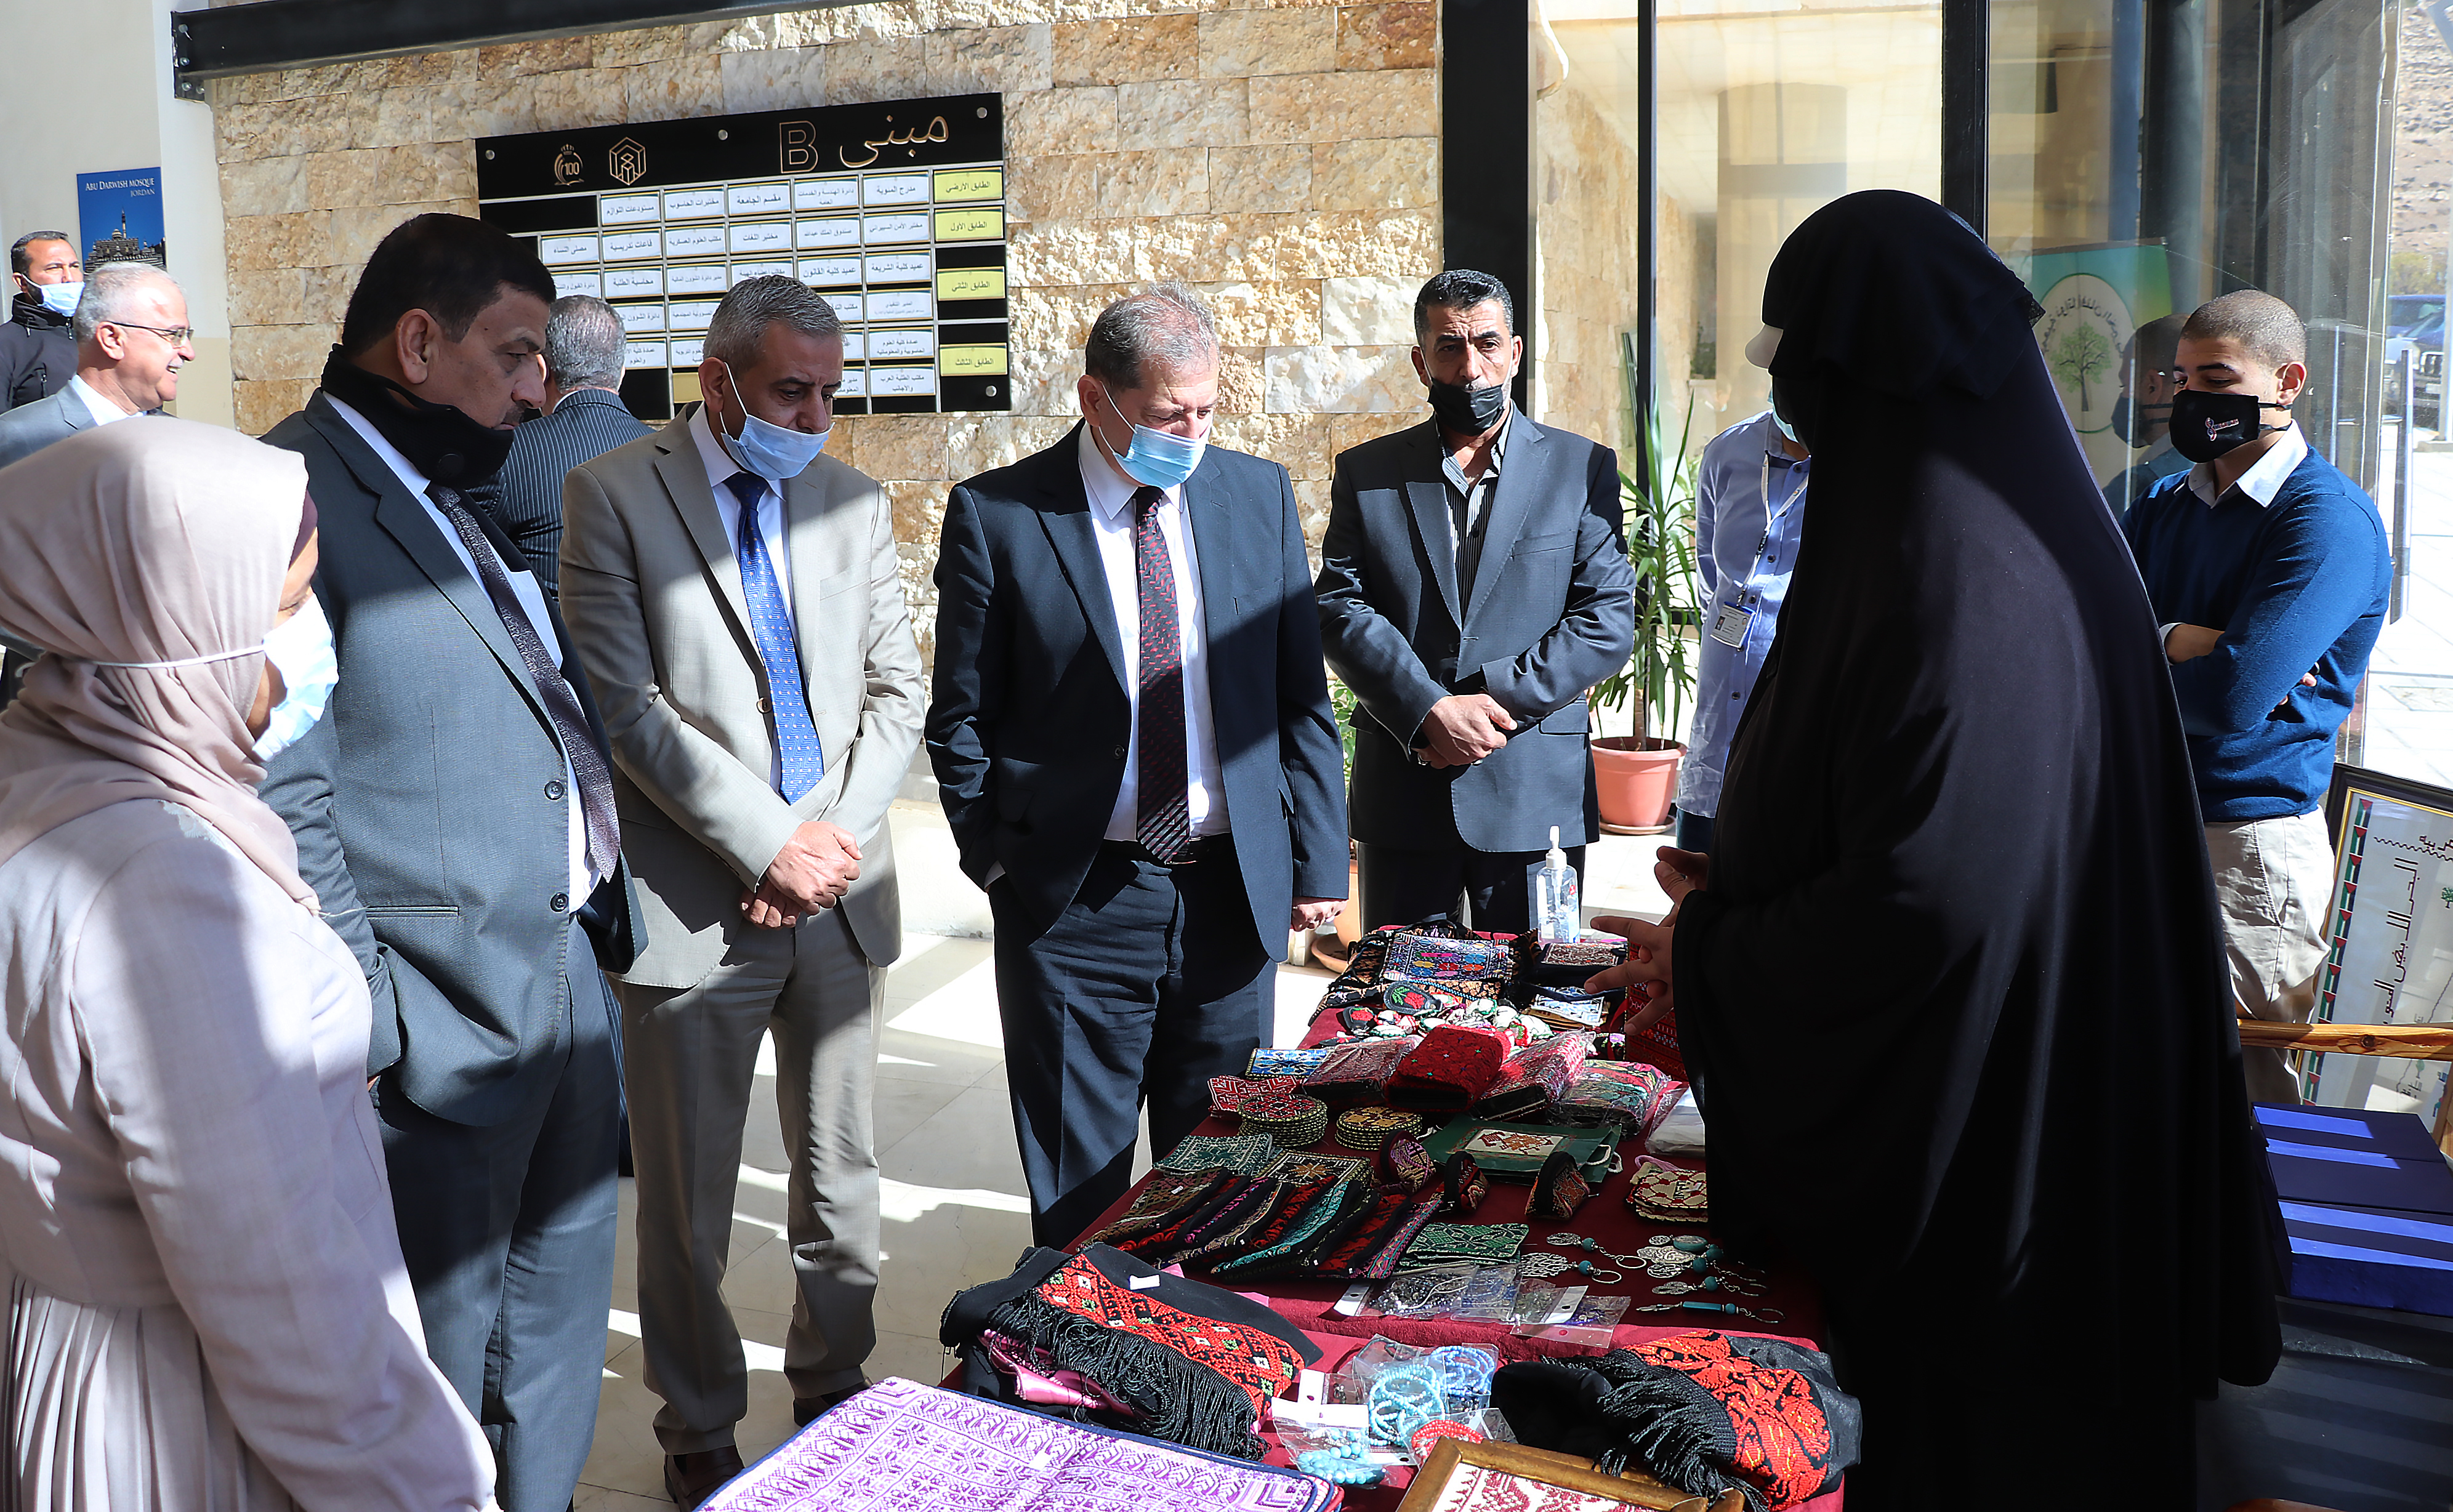 بازار خيري في "عمان العربية" بالتعاون مع جمعية ذواتا أفنان3